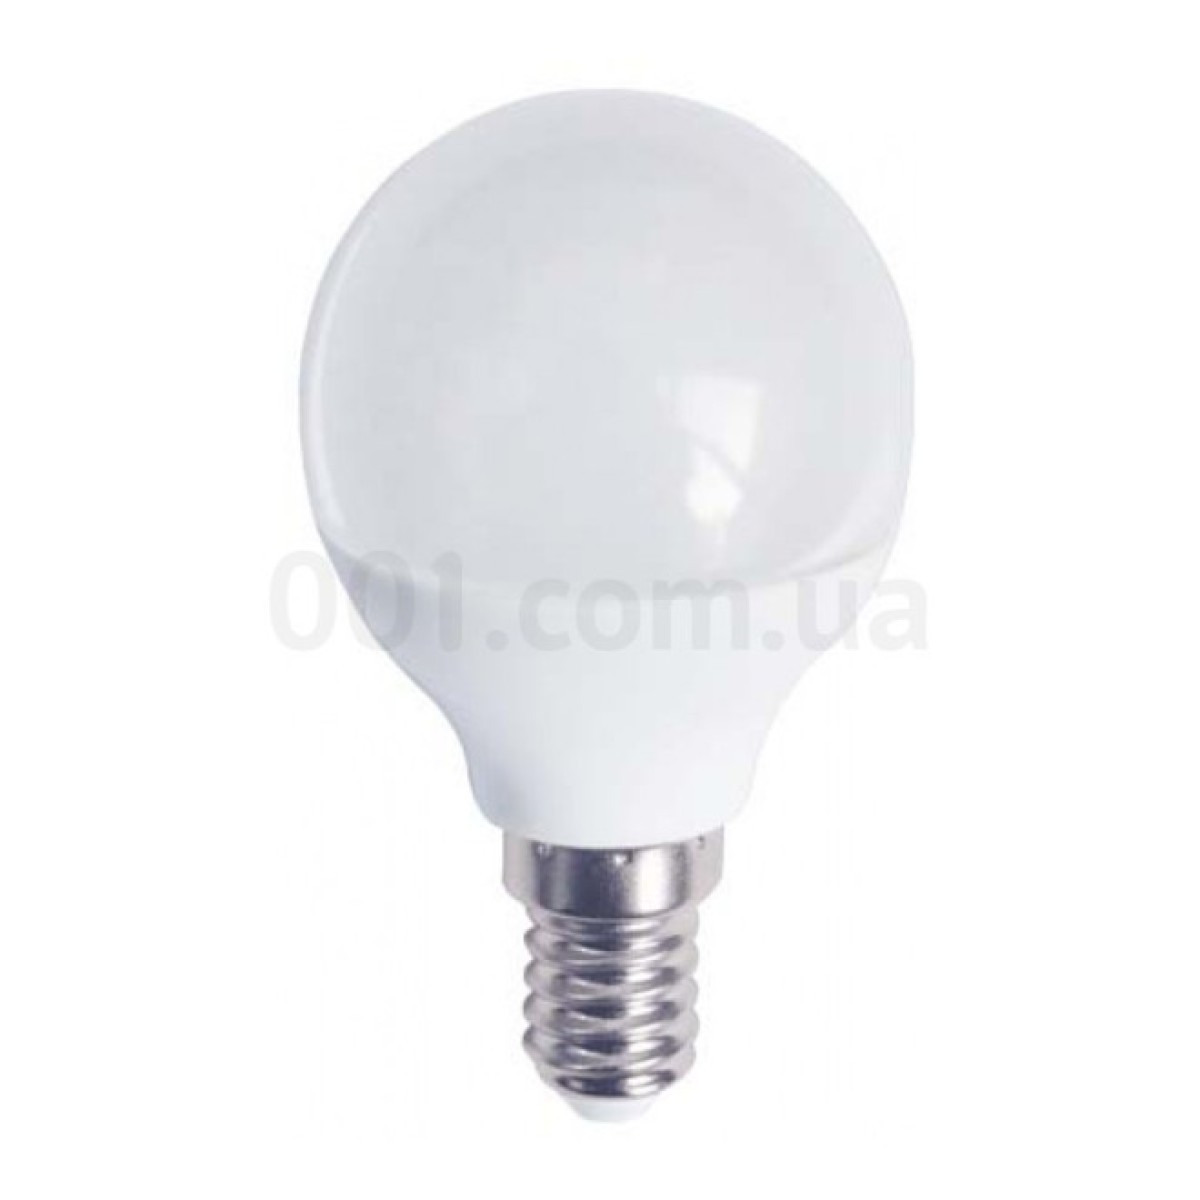 Світлодіодна лампа LB-745 P45 (куля) 6Вт 6400K E14, Feron 98_98.jpg